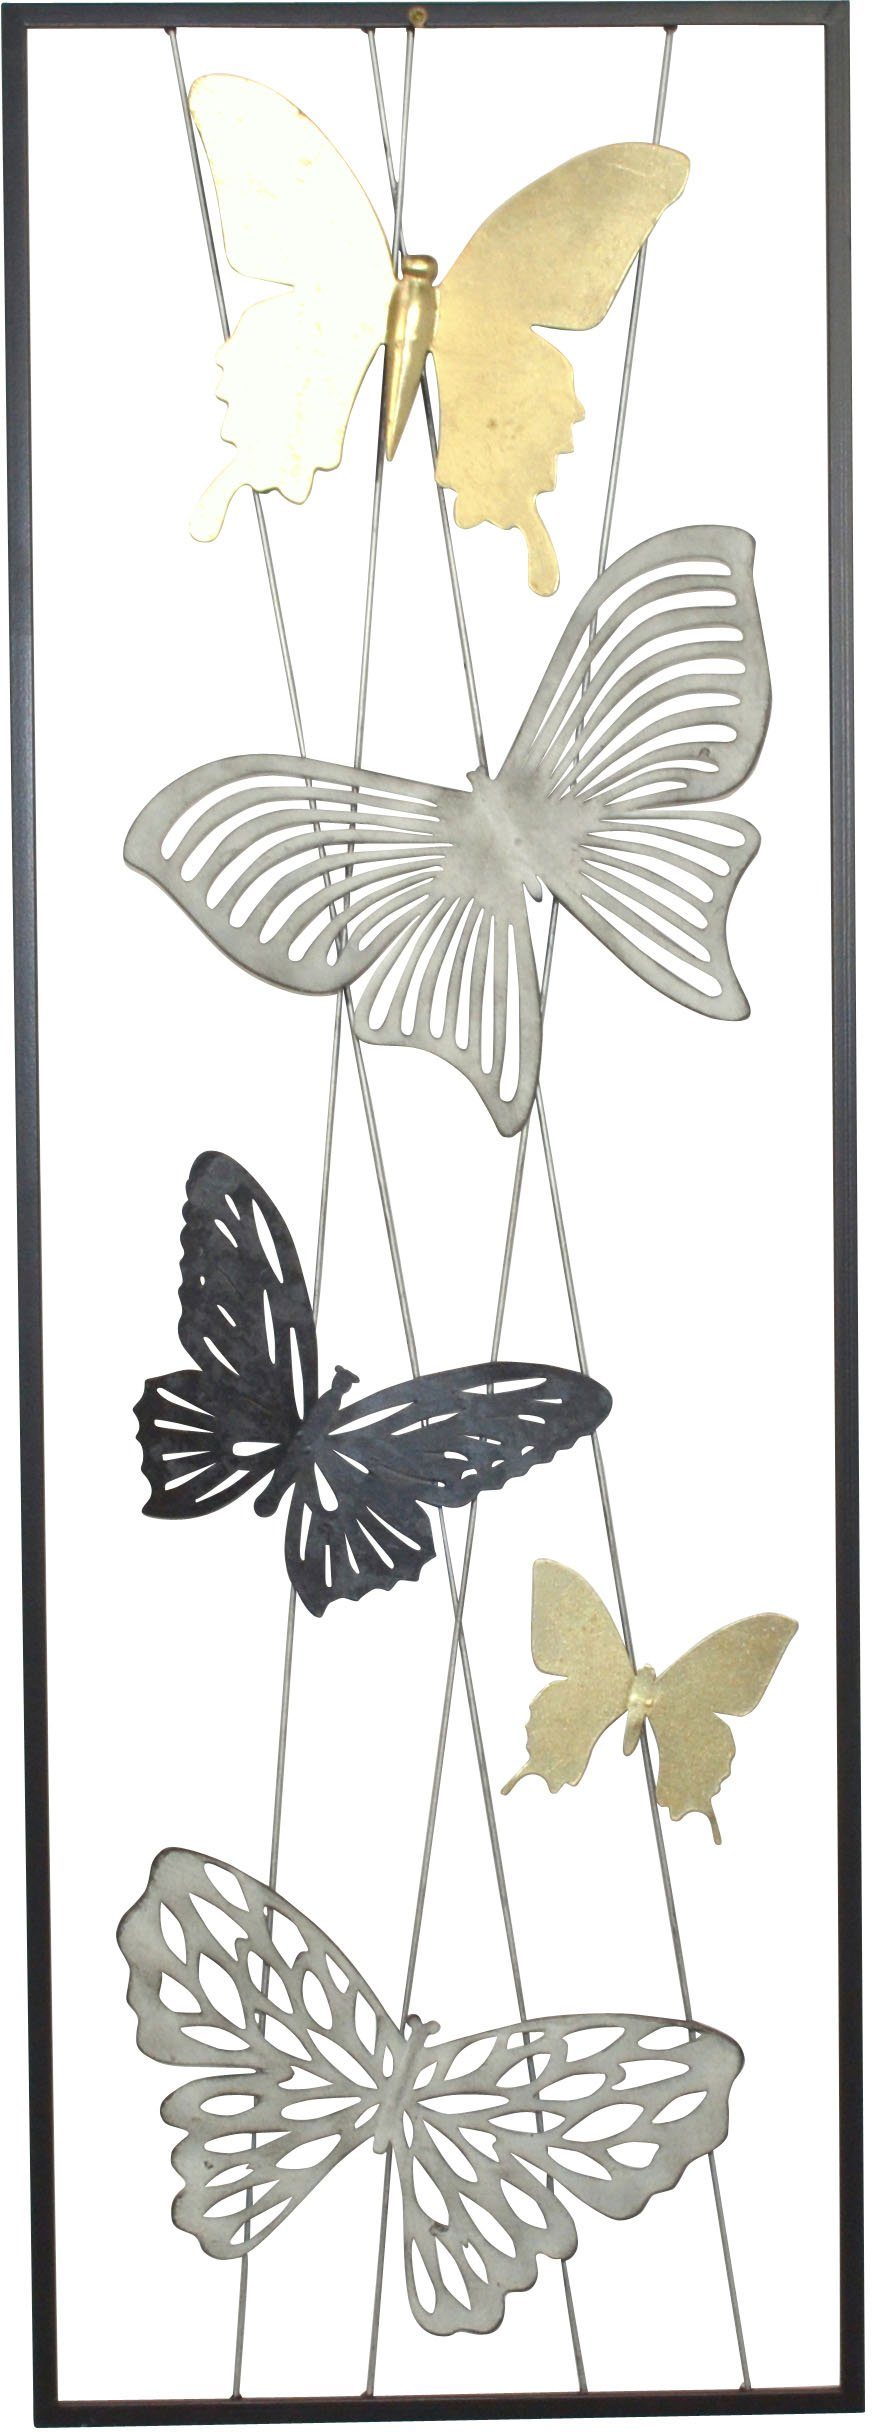 HOFMANN LIVING AND MORE Wanddekoobjekt, Motiv Wanddekoration aus Schmetterlinge Metall